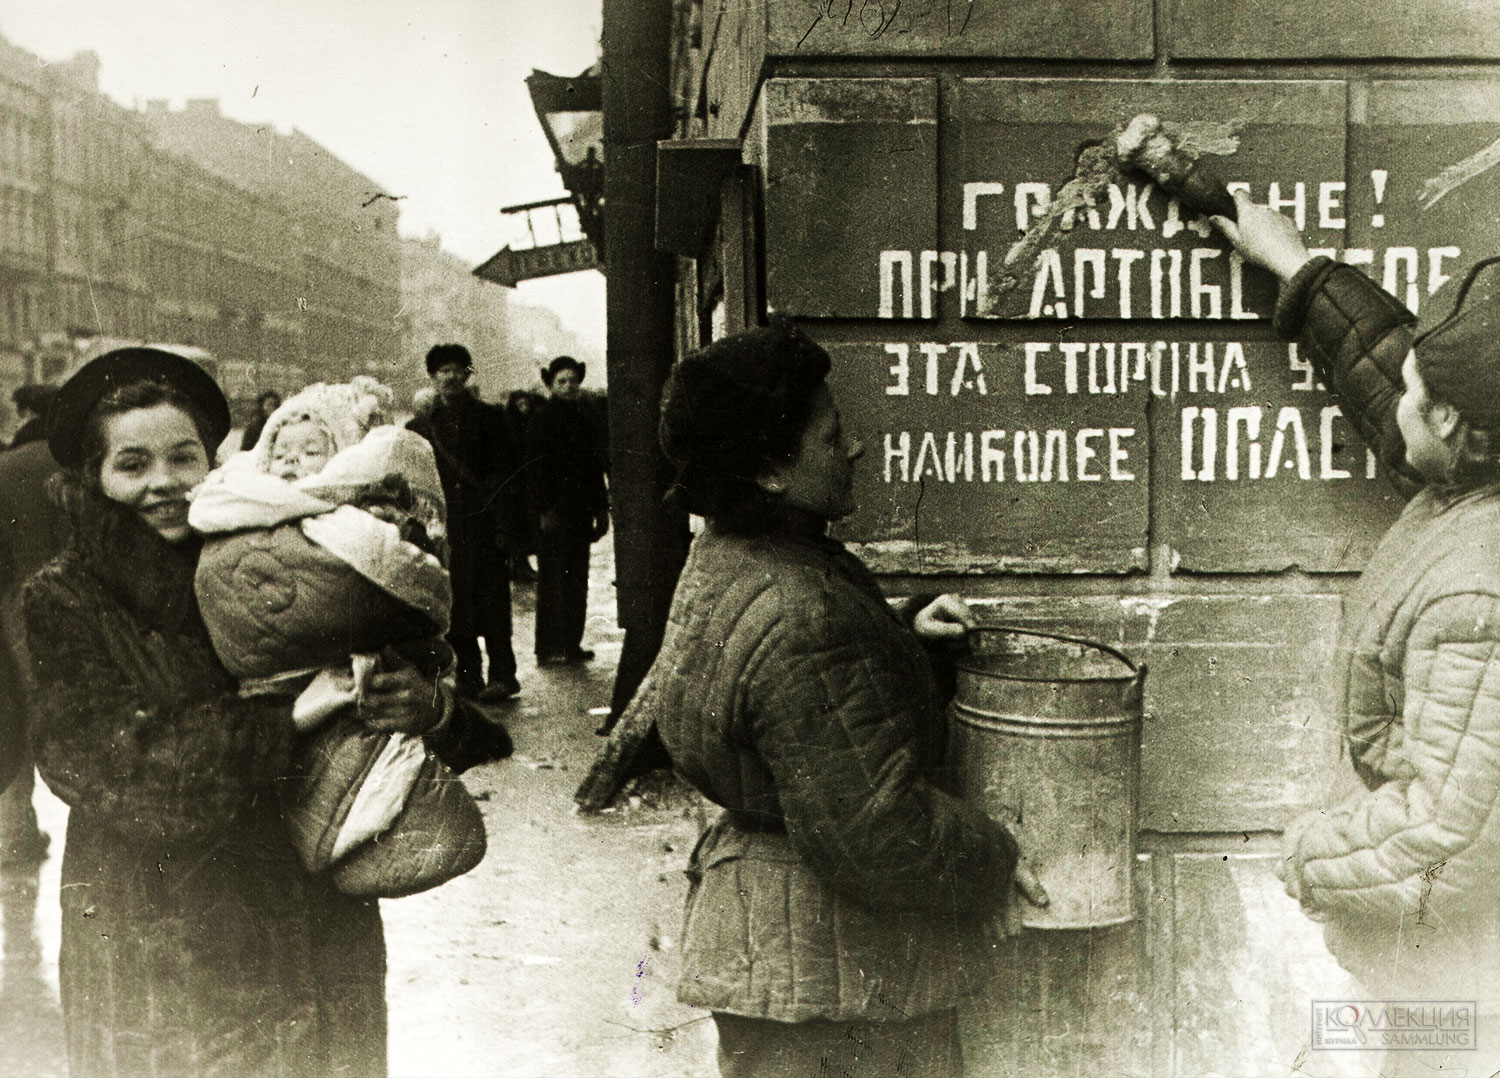 Кудояров Б.П. Фотография. Закрашивание на стене дома надписи, предостерегающей об опасности при артобстреле